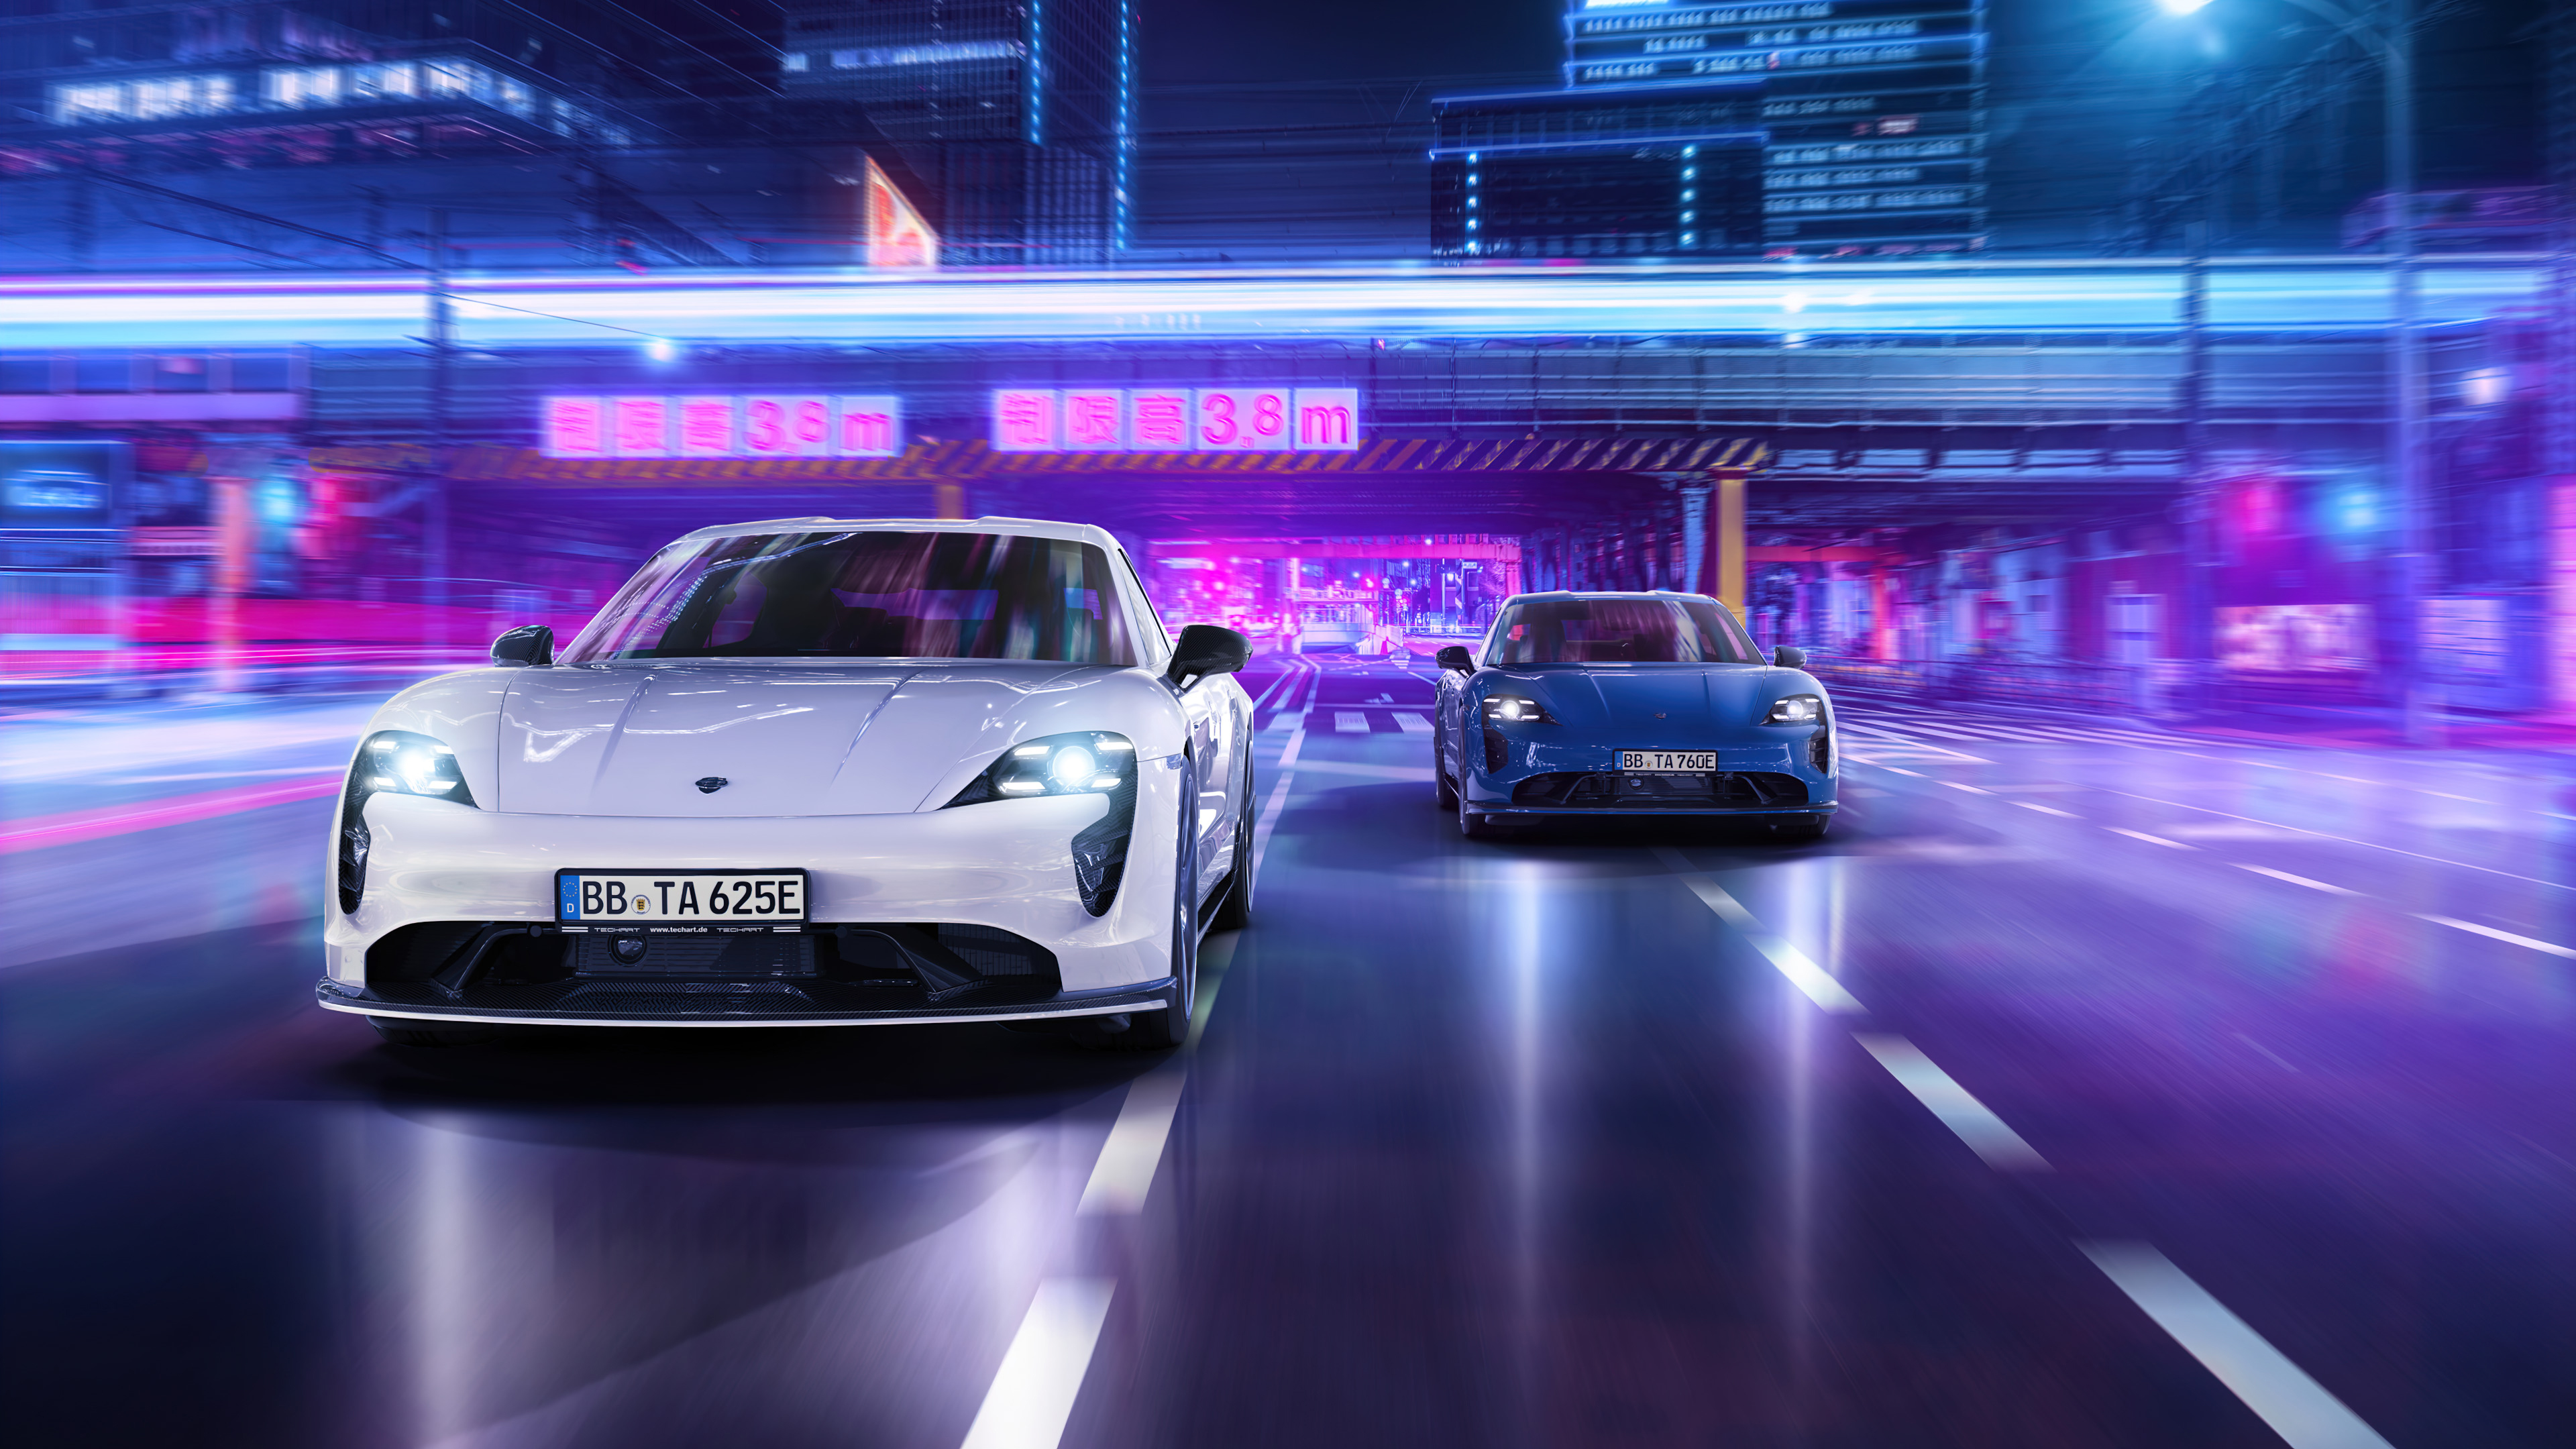 Porsche Porsche Taycan Street Night City Lights Motion Blur Japan Blue Cars White Cars Overpass 3840x2160